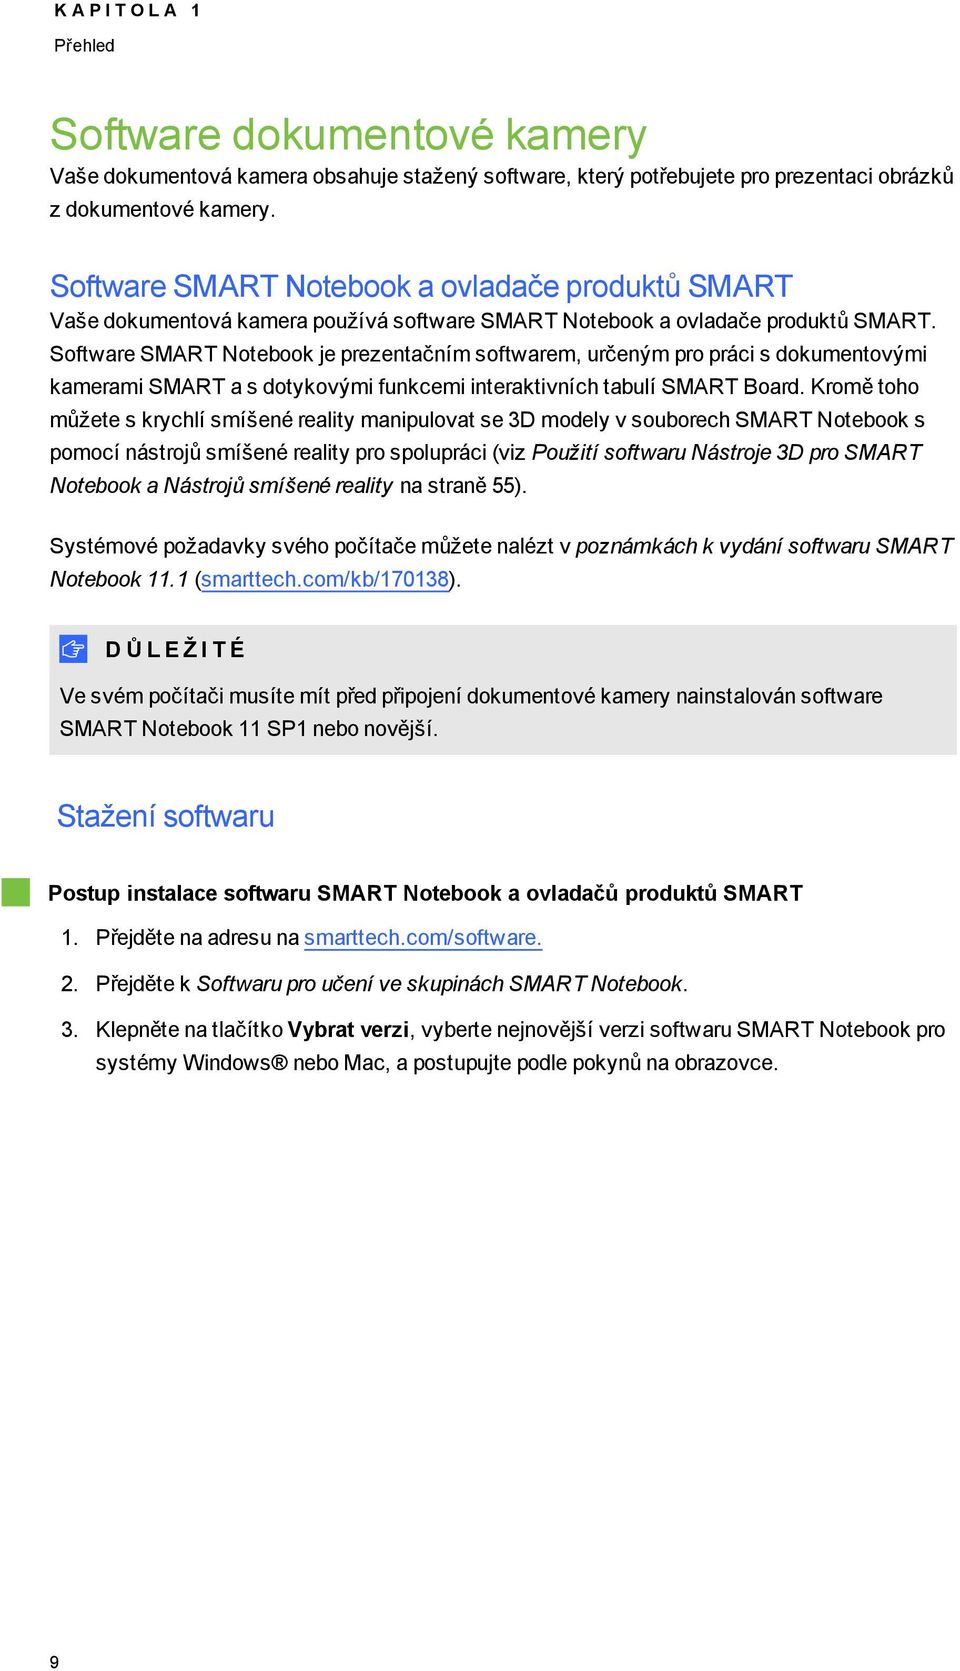 Sftware SMART Ntebk je prezentačním sftwarem, určeným pr práci s dkumentvými kamerami SMART a s dtykvými funkcemi interaktivních tabulí SMART Bard.